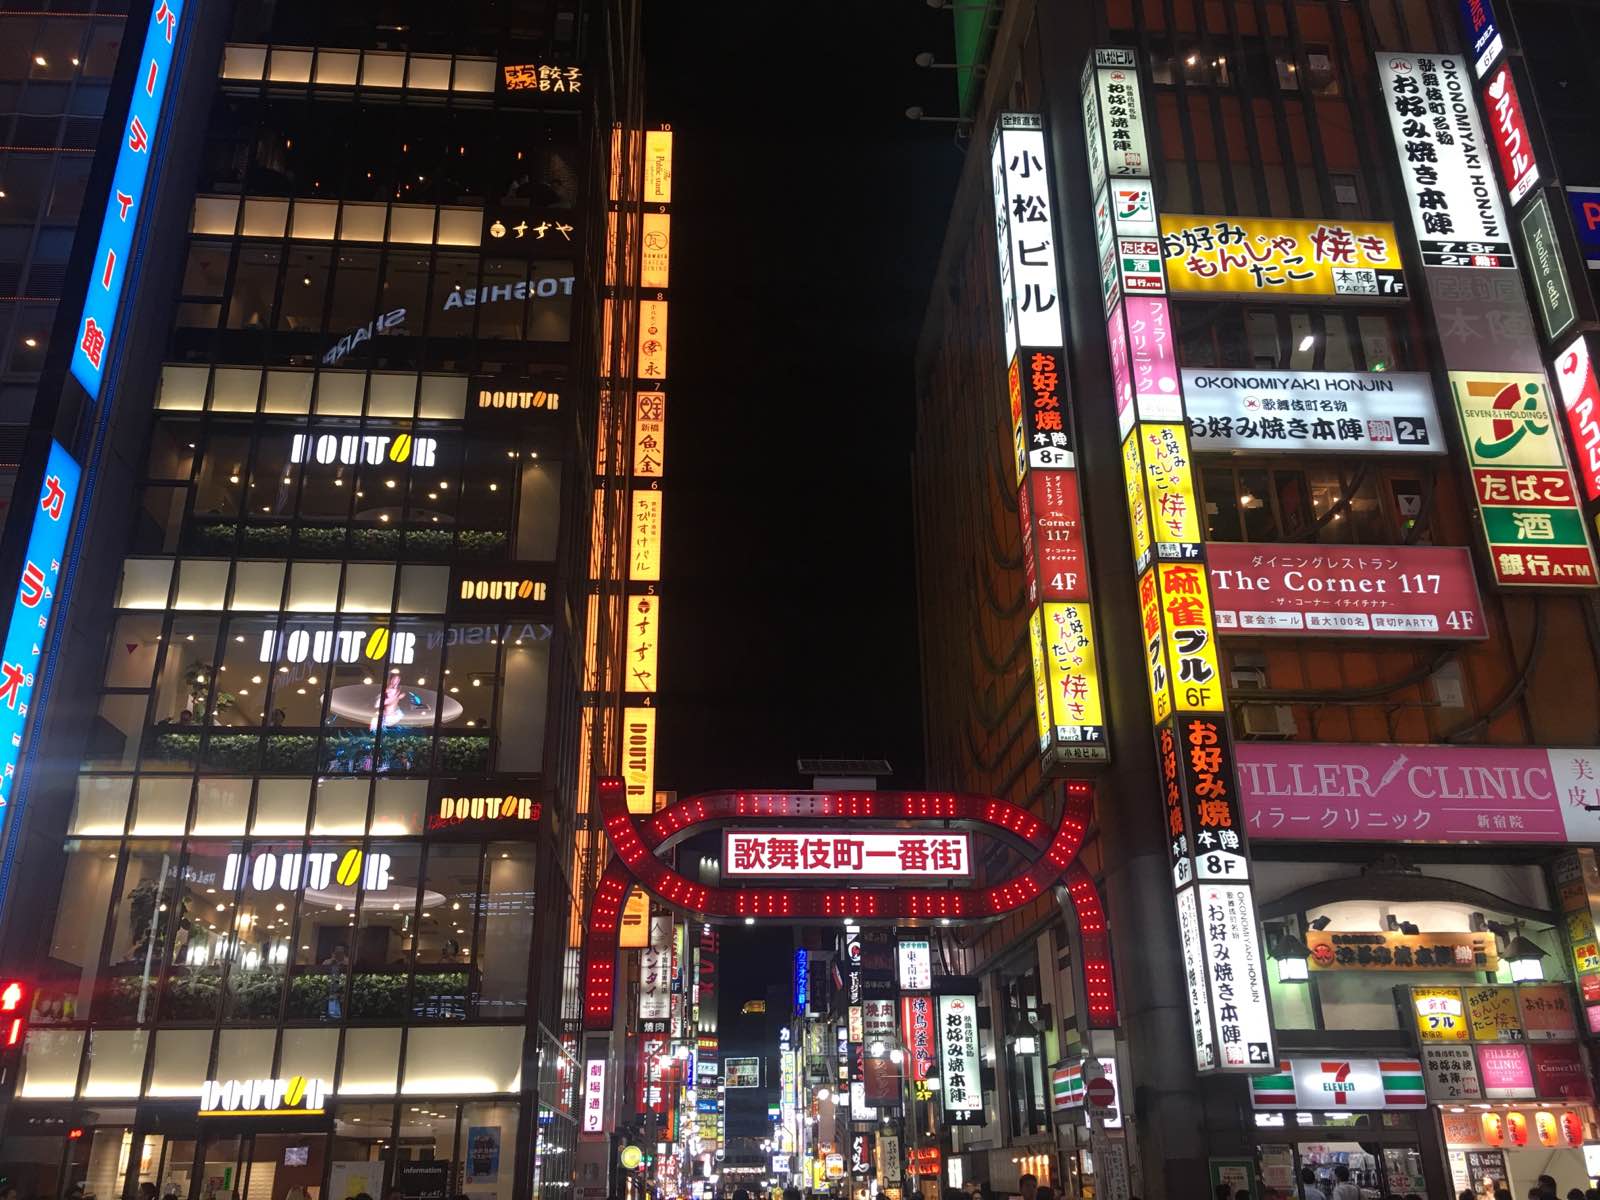 吃完晚饭回到新宿站继续逛街，旁边就是歌舞伎厅，超级热闹！外国人也多，商